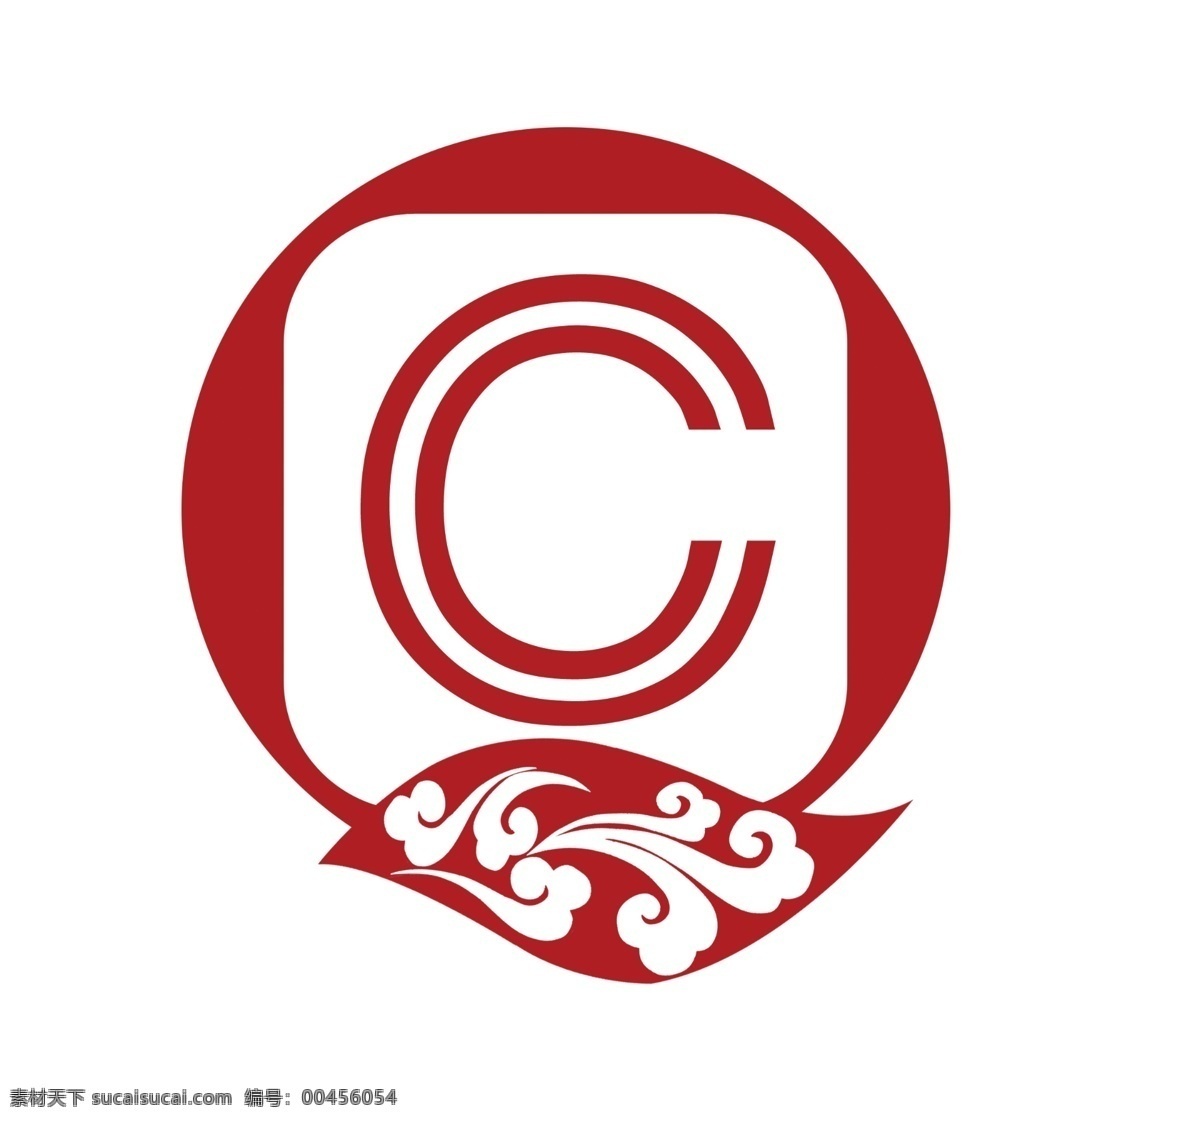 logo设计 标志设计 广告设计模板 叶子 源文件 云纹 字母 qc logo 模板下载 psd源文件